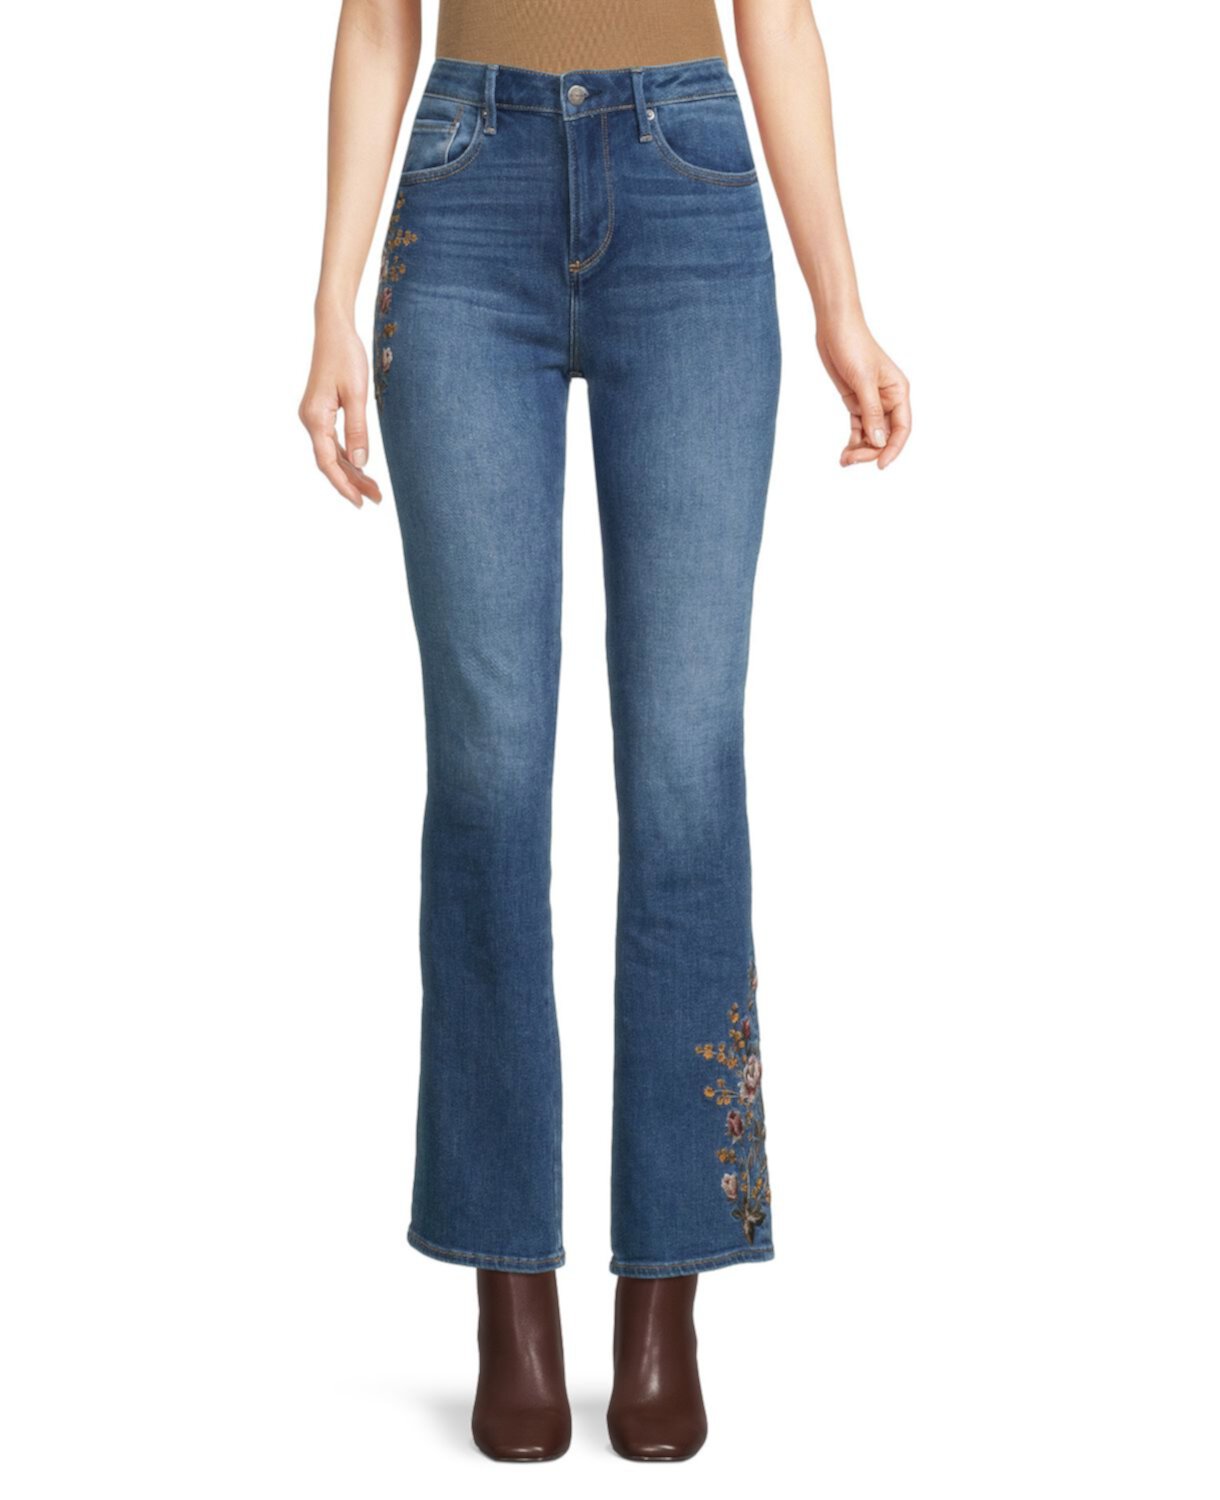 Расклешенные джинсы Kelly с вышивкой Driftwood